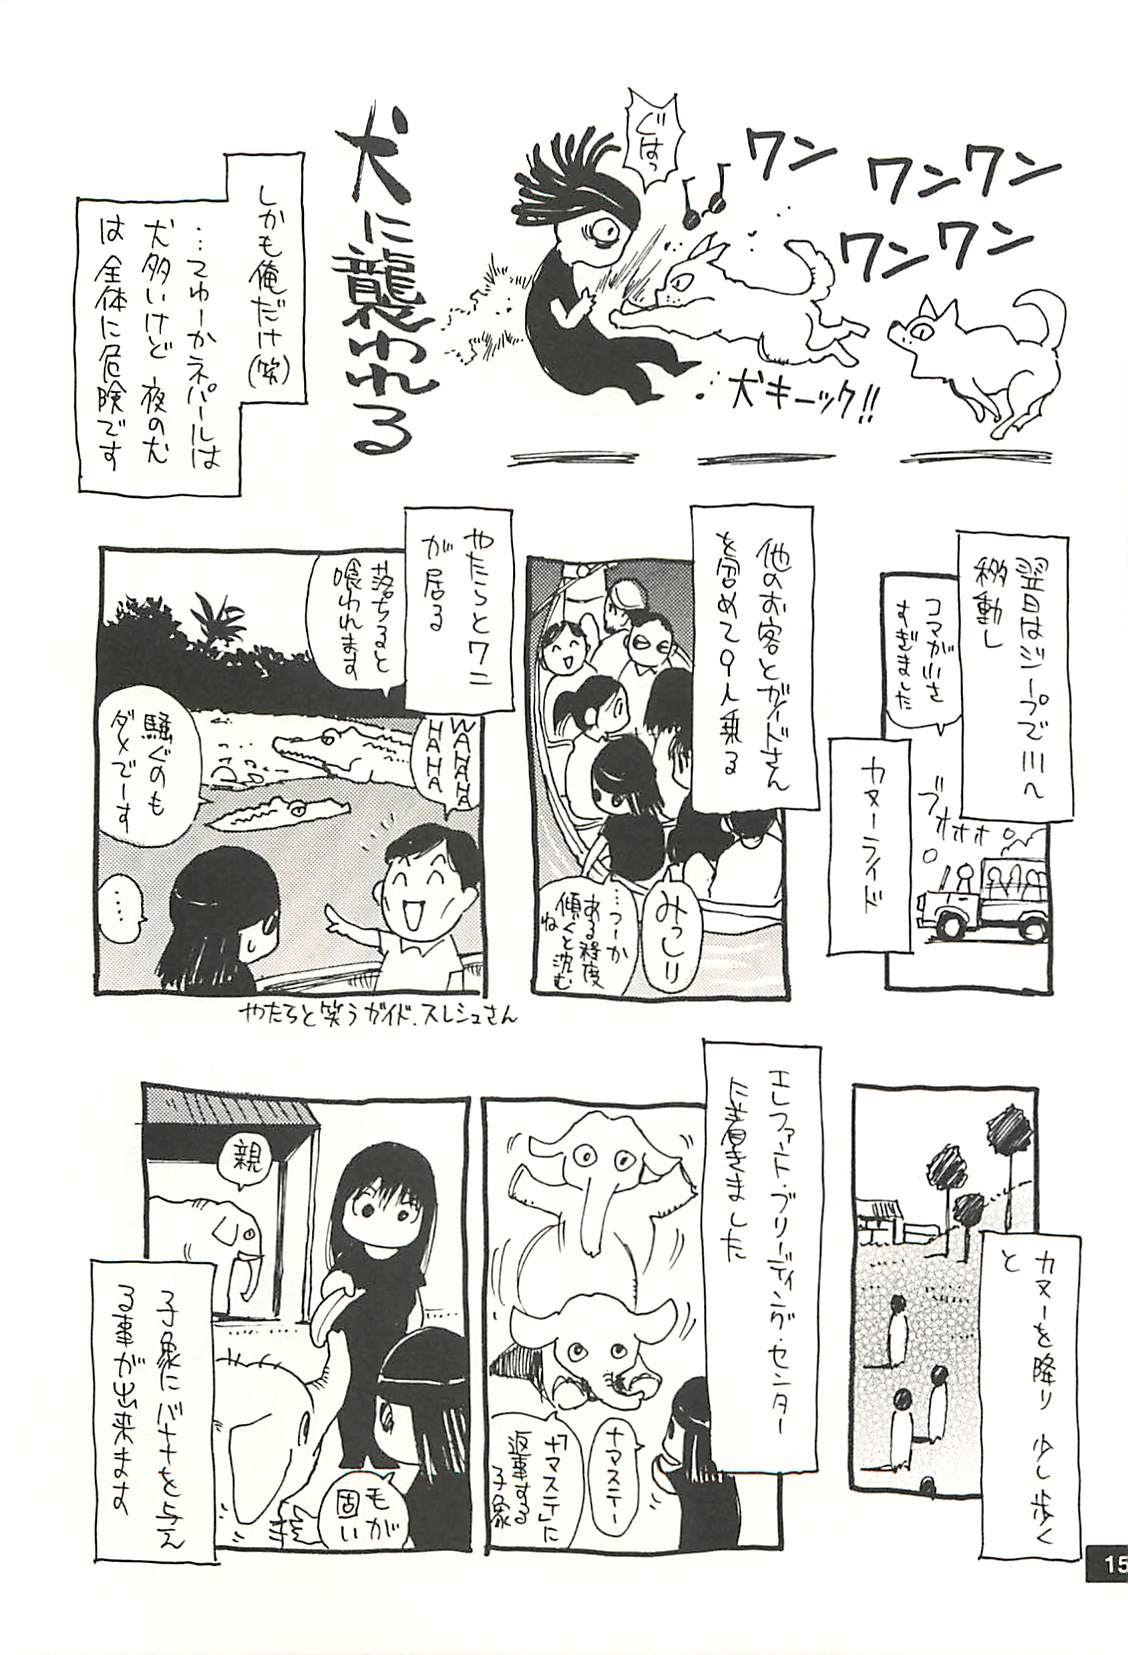 [NOUZUI MAJUTSU, NO-NO'S (Kawara Keisuke, Kanesada Keishi)] Nouzui Kawaraban Hinichijoutekina Nichijou NEPAL-hen 13